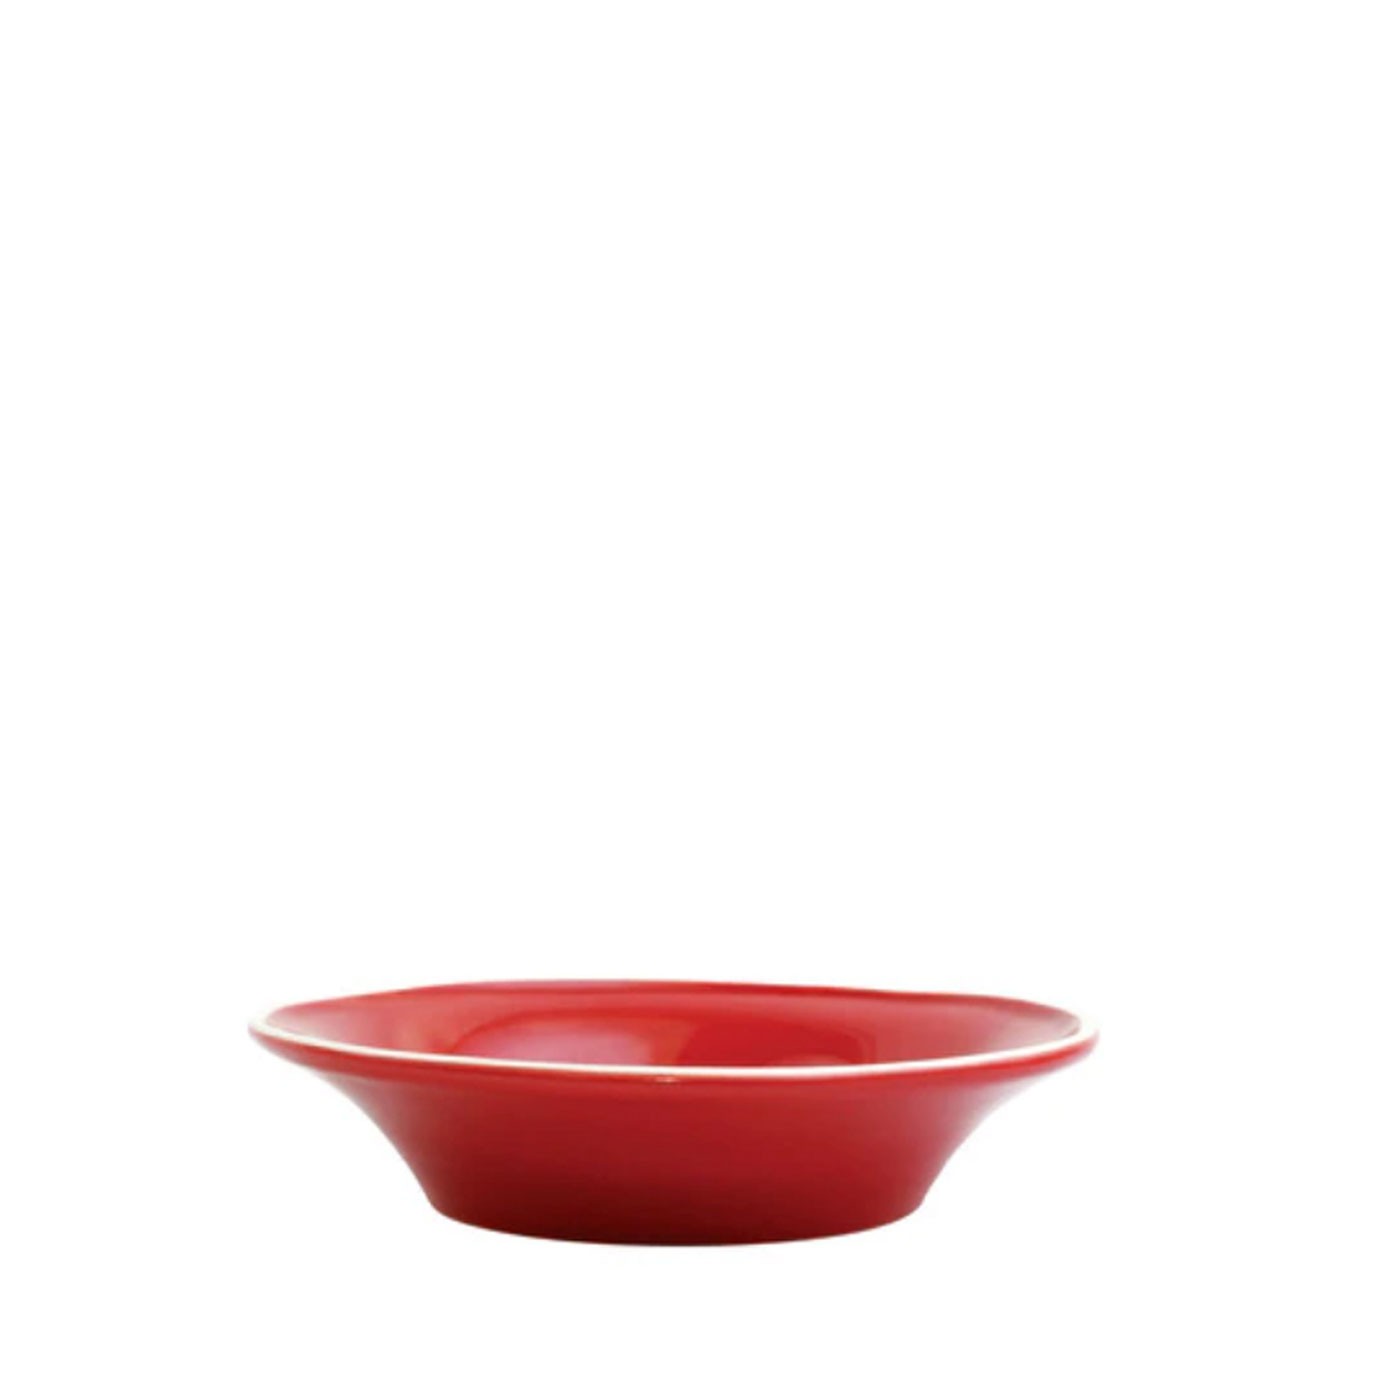 Chroma Red Pasta Bowl - Vietri | Eataly.com